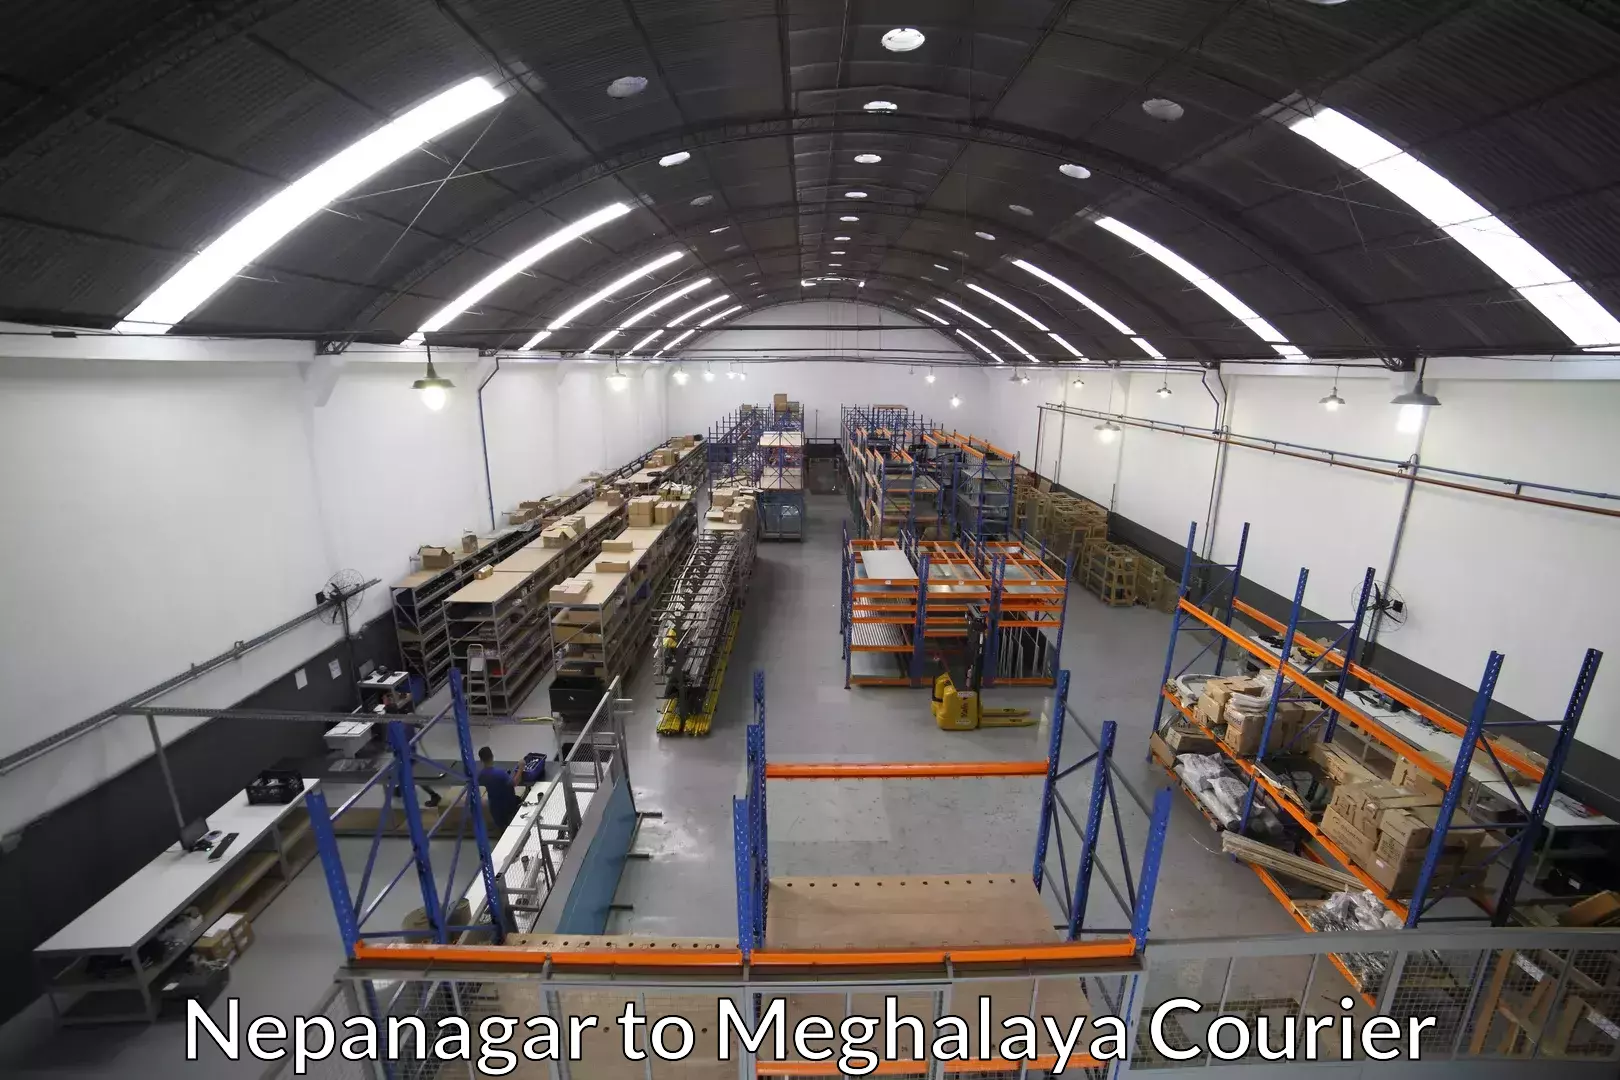 Furniture moving experts Nepanagar to Meghalaya